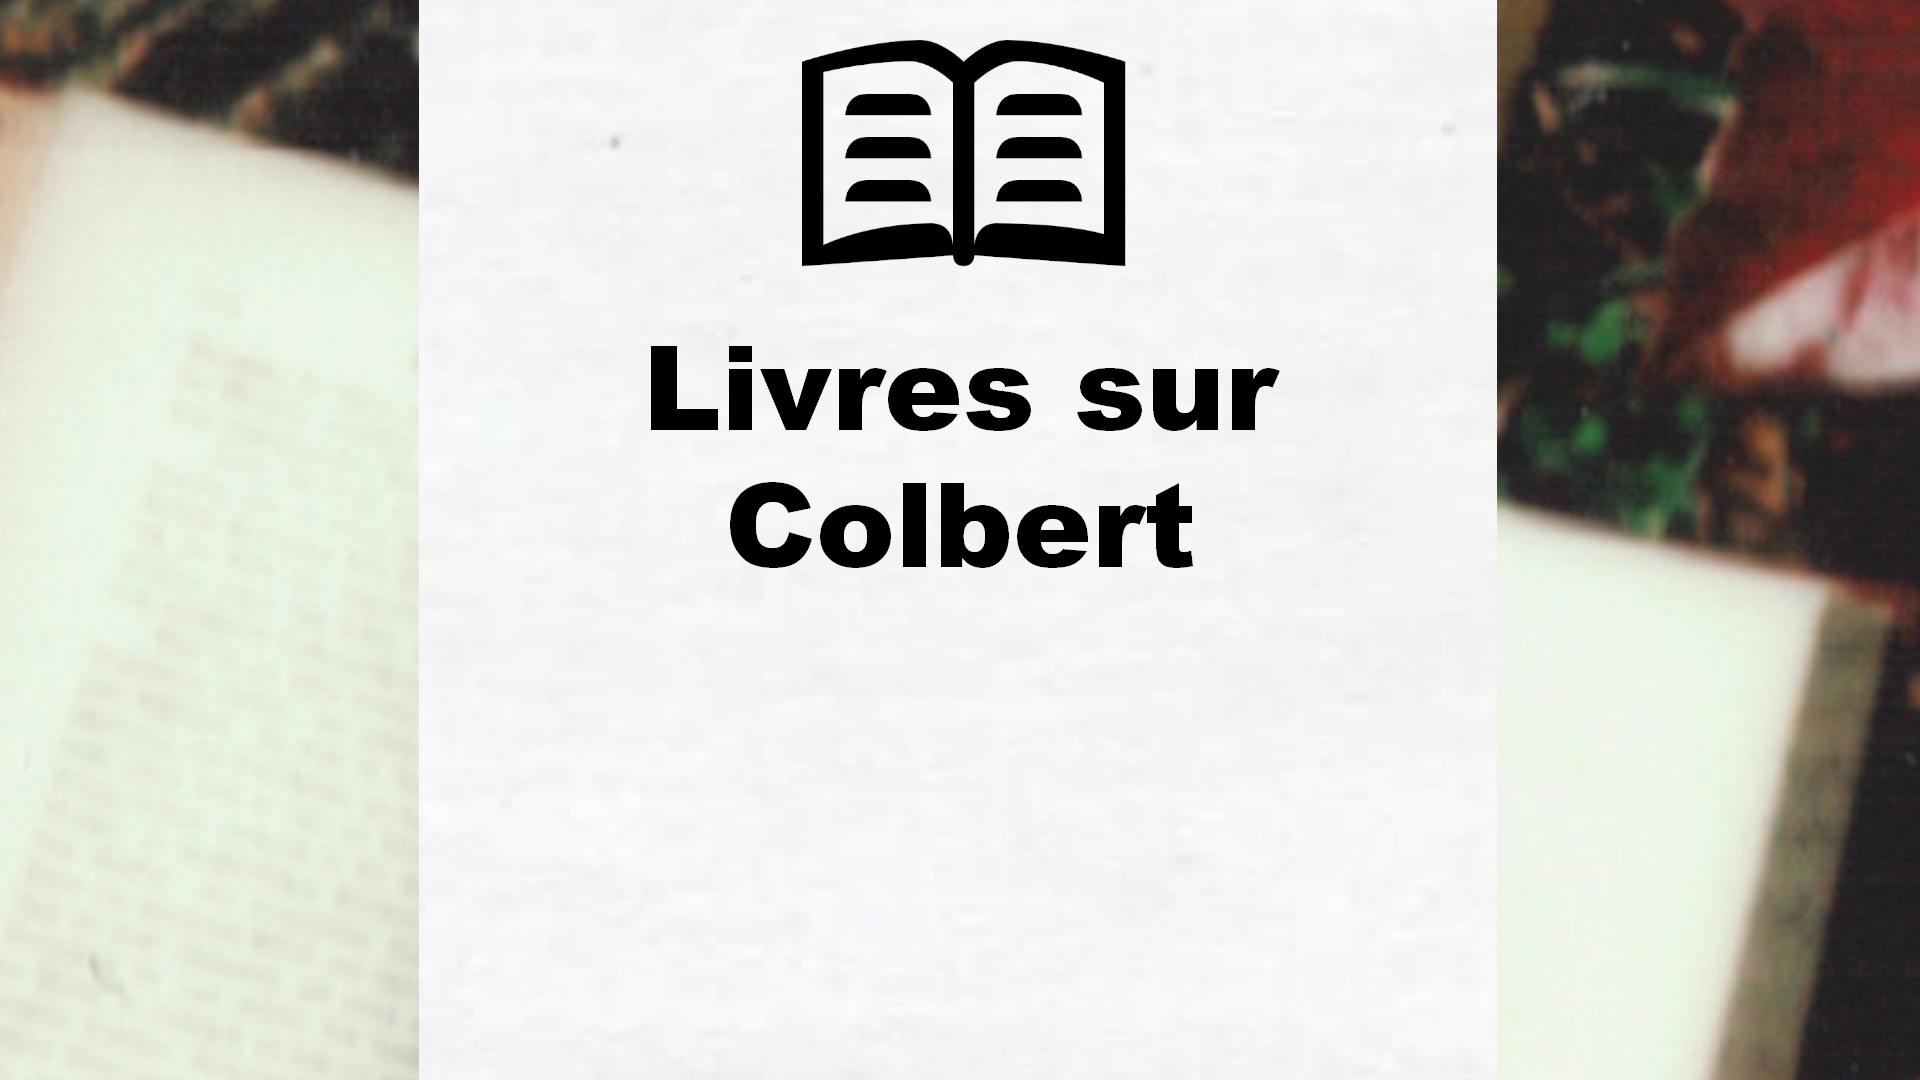 Livres sur Colbert